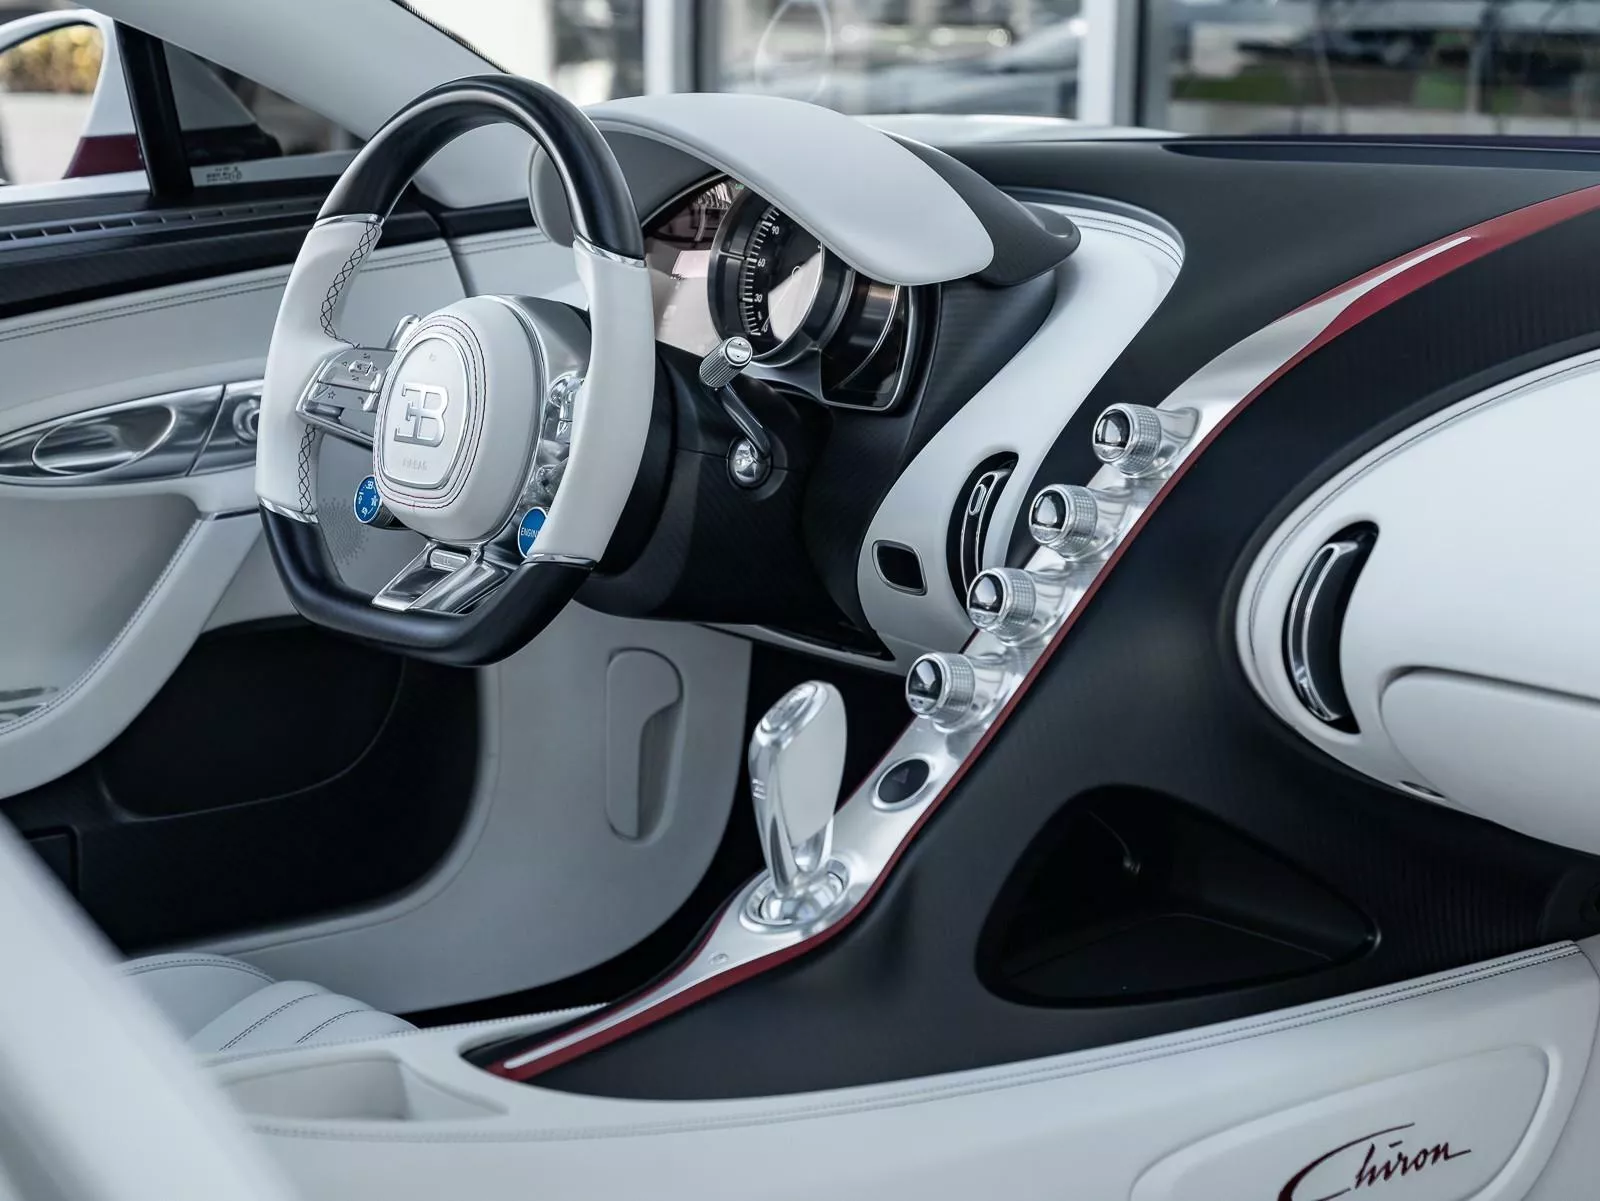 Гиперкар Bugatti выставили на продажу в комплекте с купе Rolls-Royce2